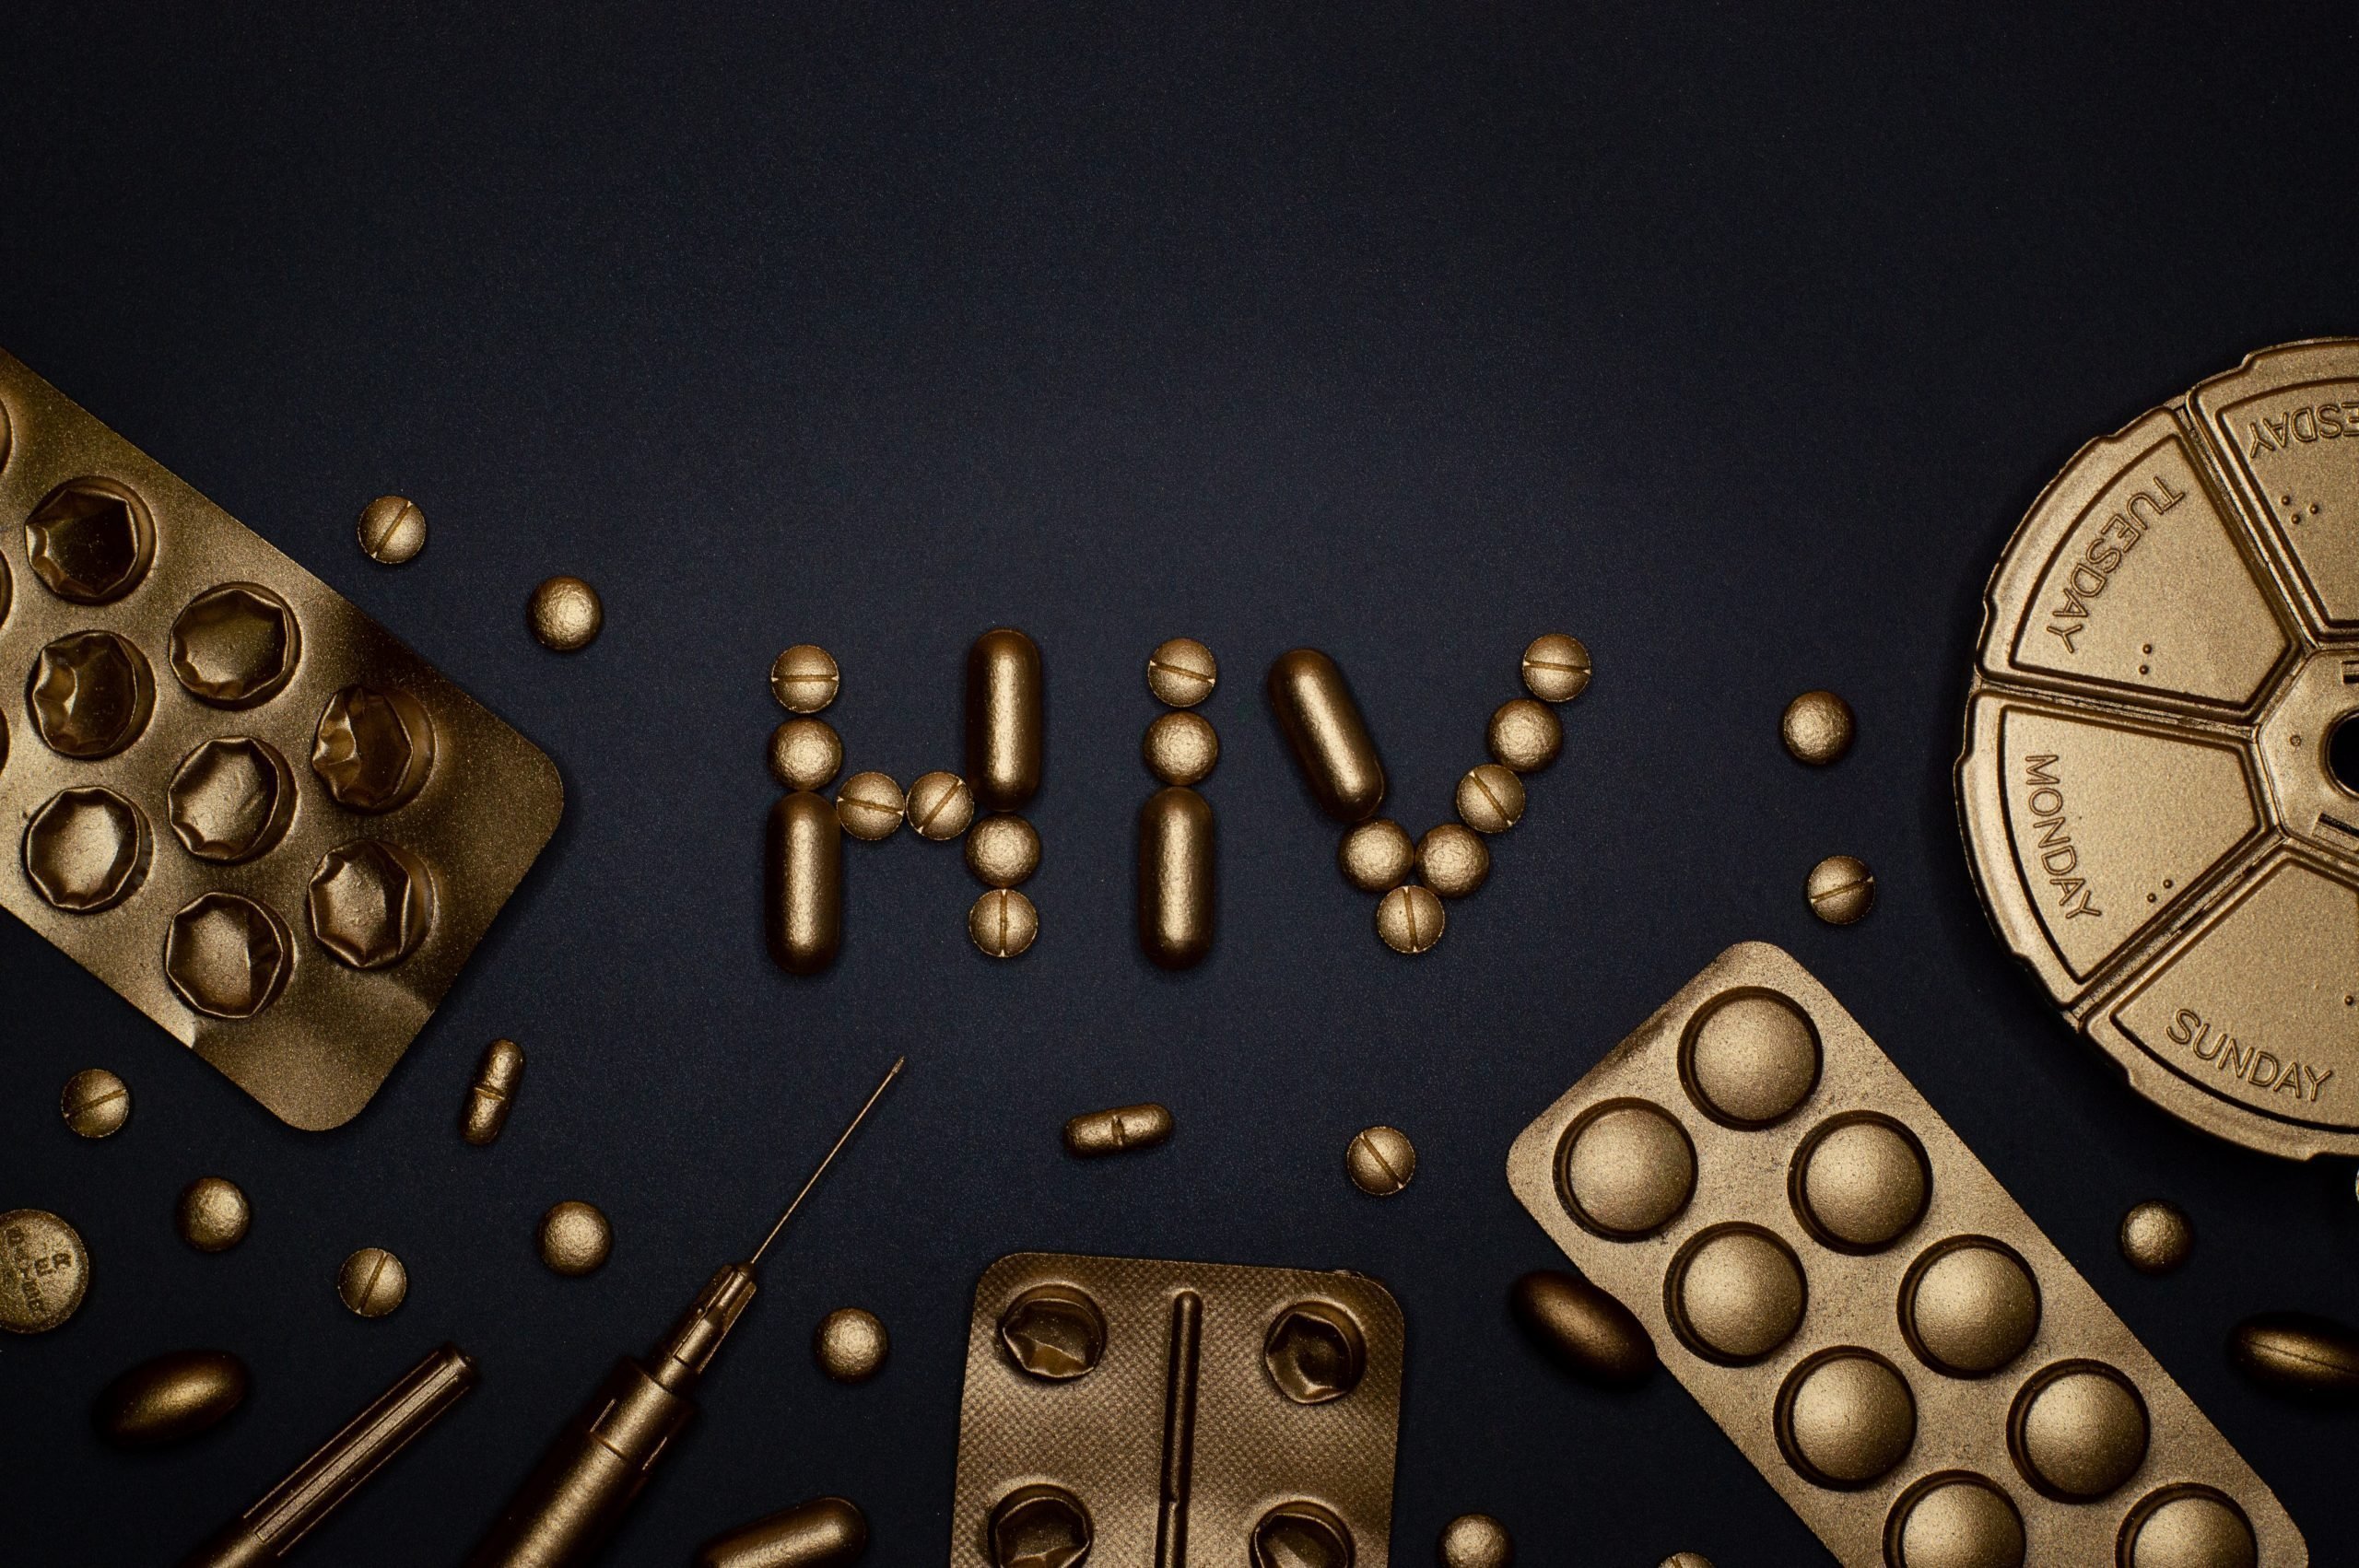 Moderna a început testele clinice pentru un vaccin împotriva HIV pe bază de ARN mesager